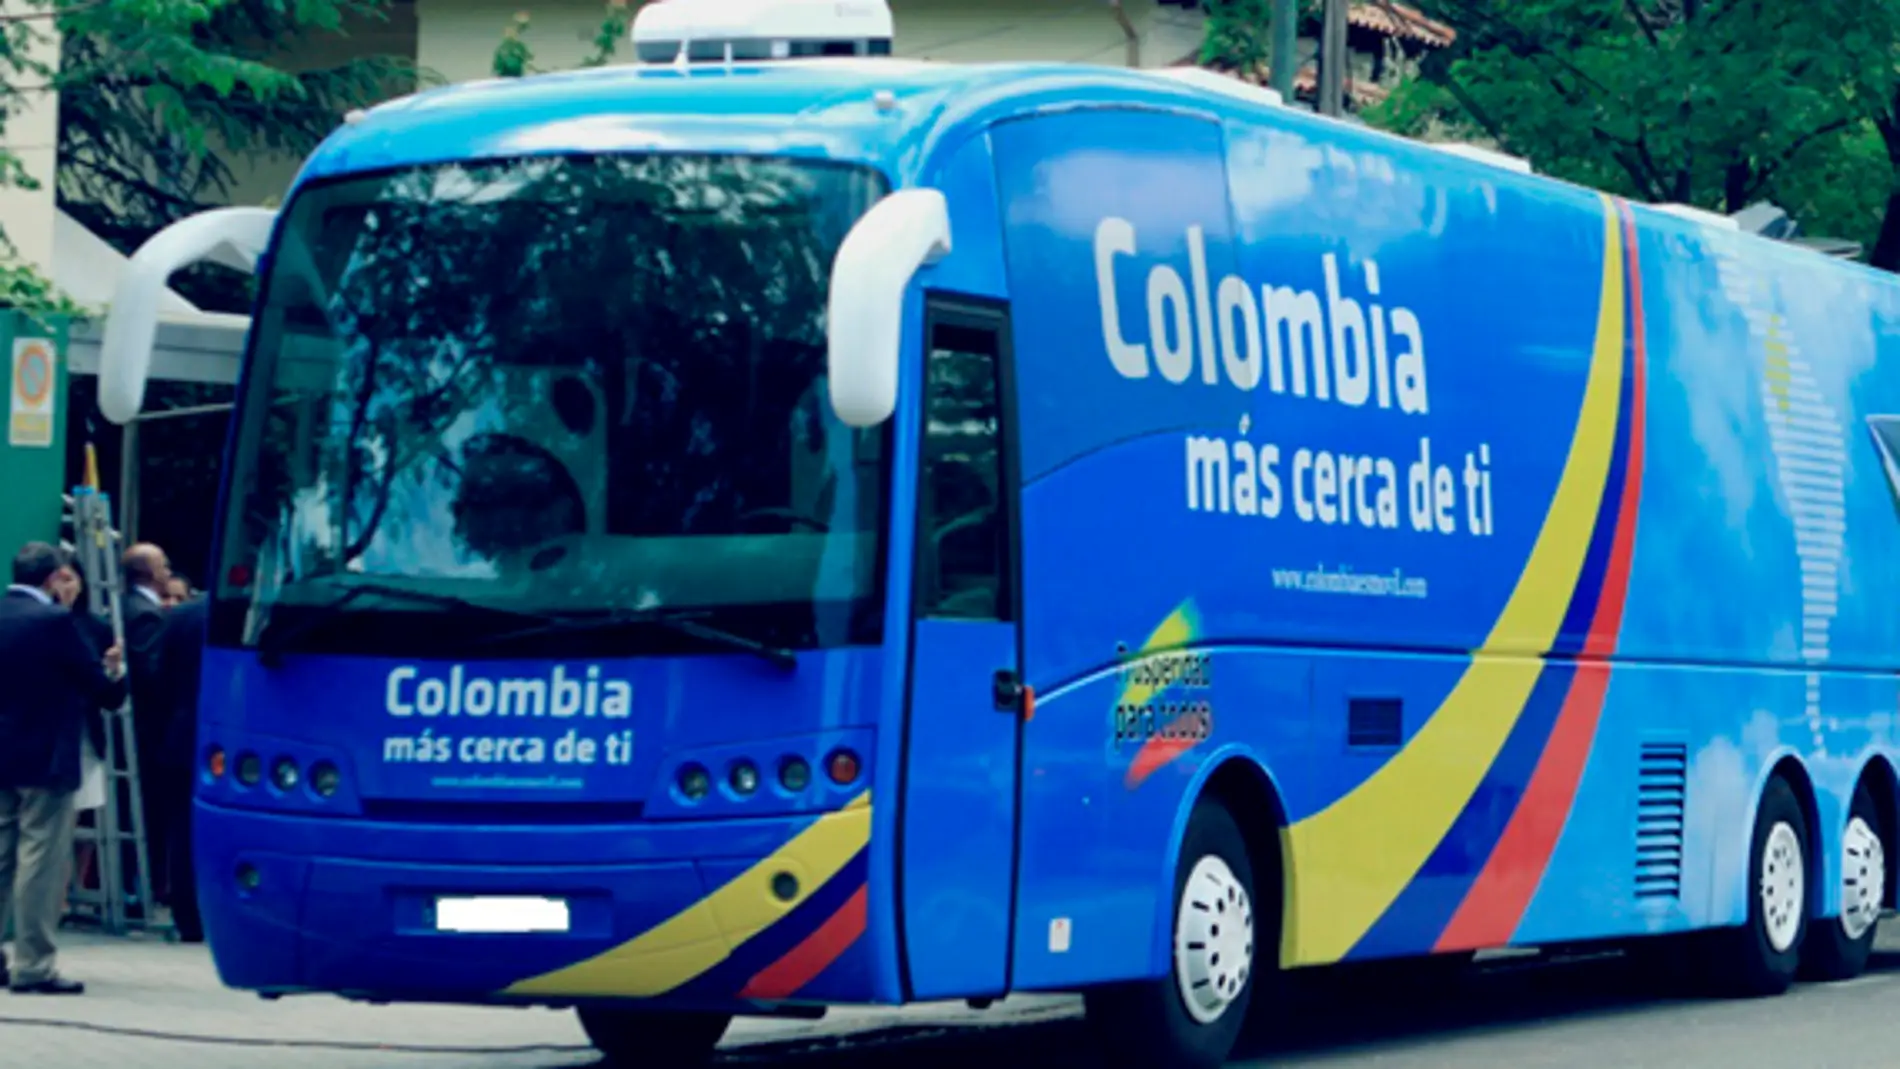 Este servicio del Consulado colombiano se dará exclusivamente con cita previa para evitar cualquier tipo de aglomeración en las inmediaciones del bus 